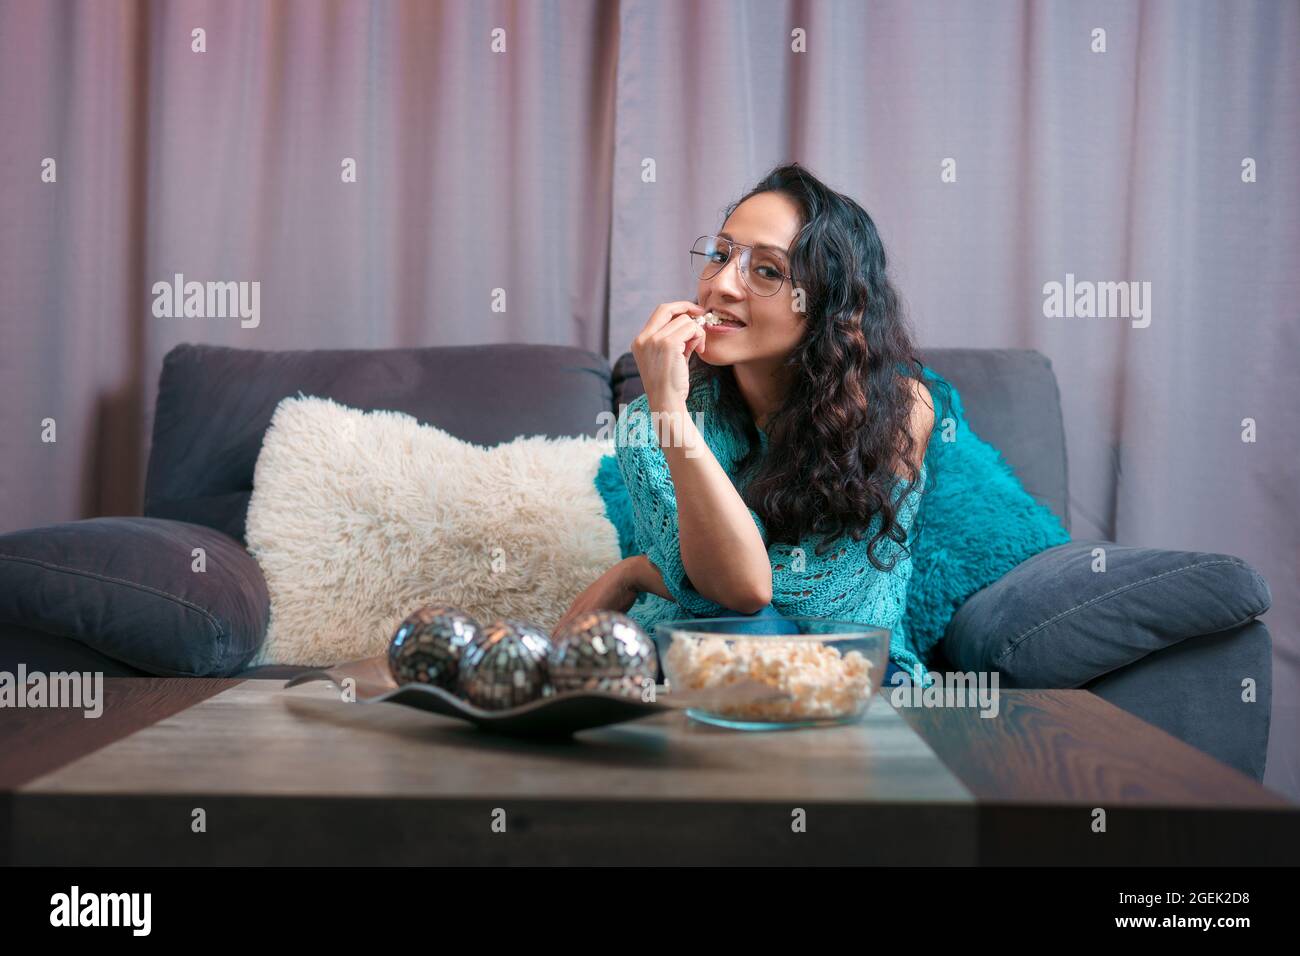 Horizontale Ansicht einer Frau, die zu Hause einen Film sieht, sitzt sie sehr ruhig auf ihrem Sofa und blickt auf die Kamera und isst viel Popcorn Stockfoto